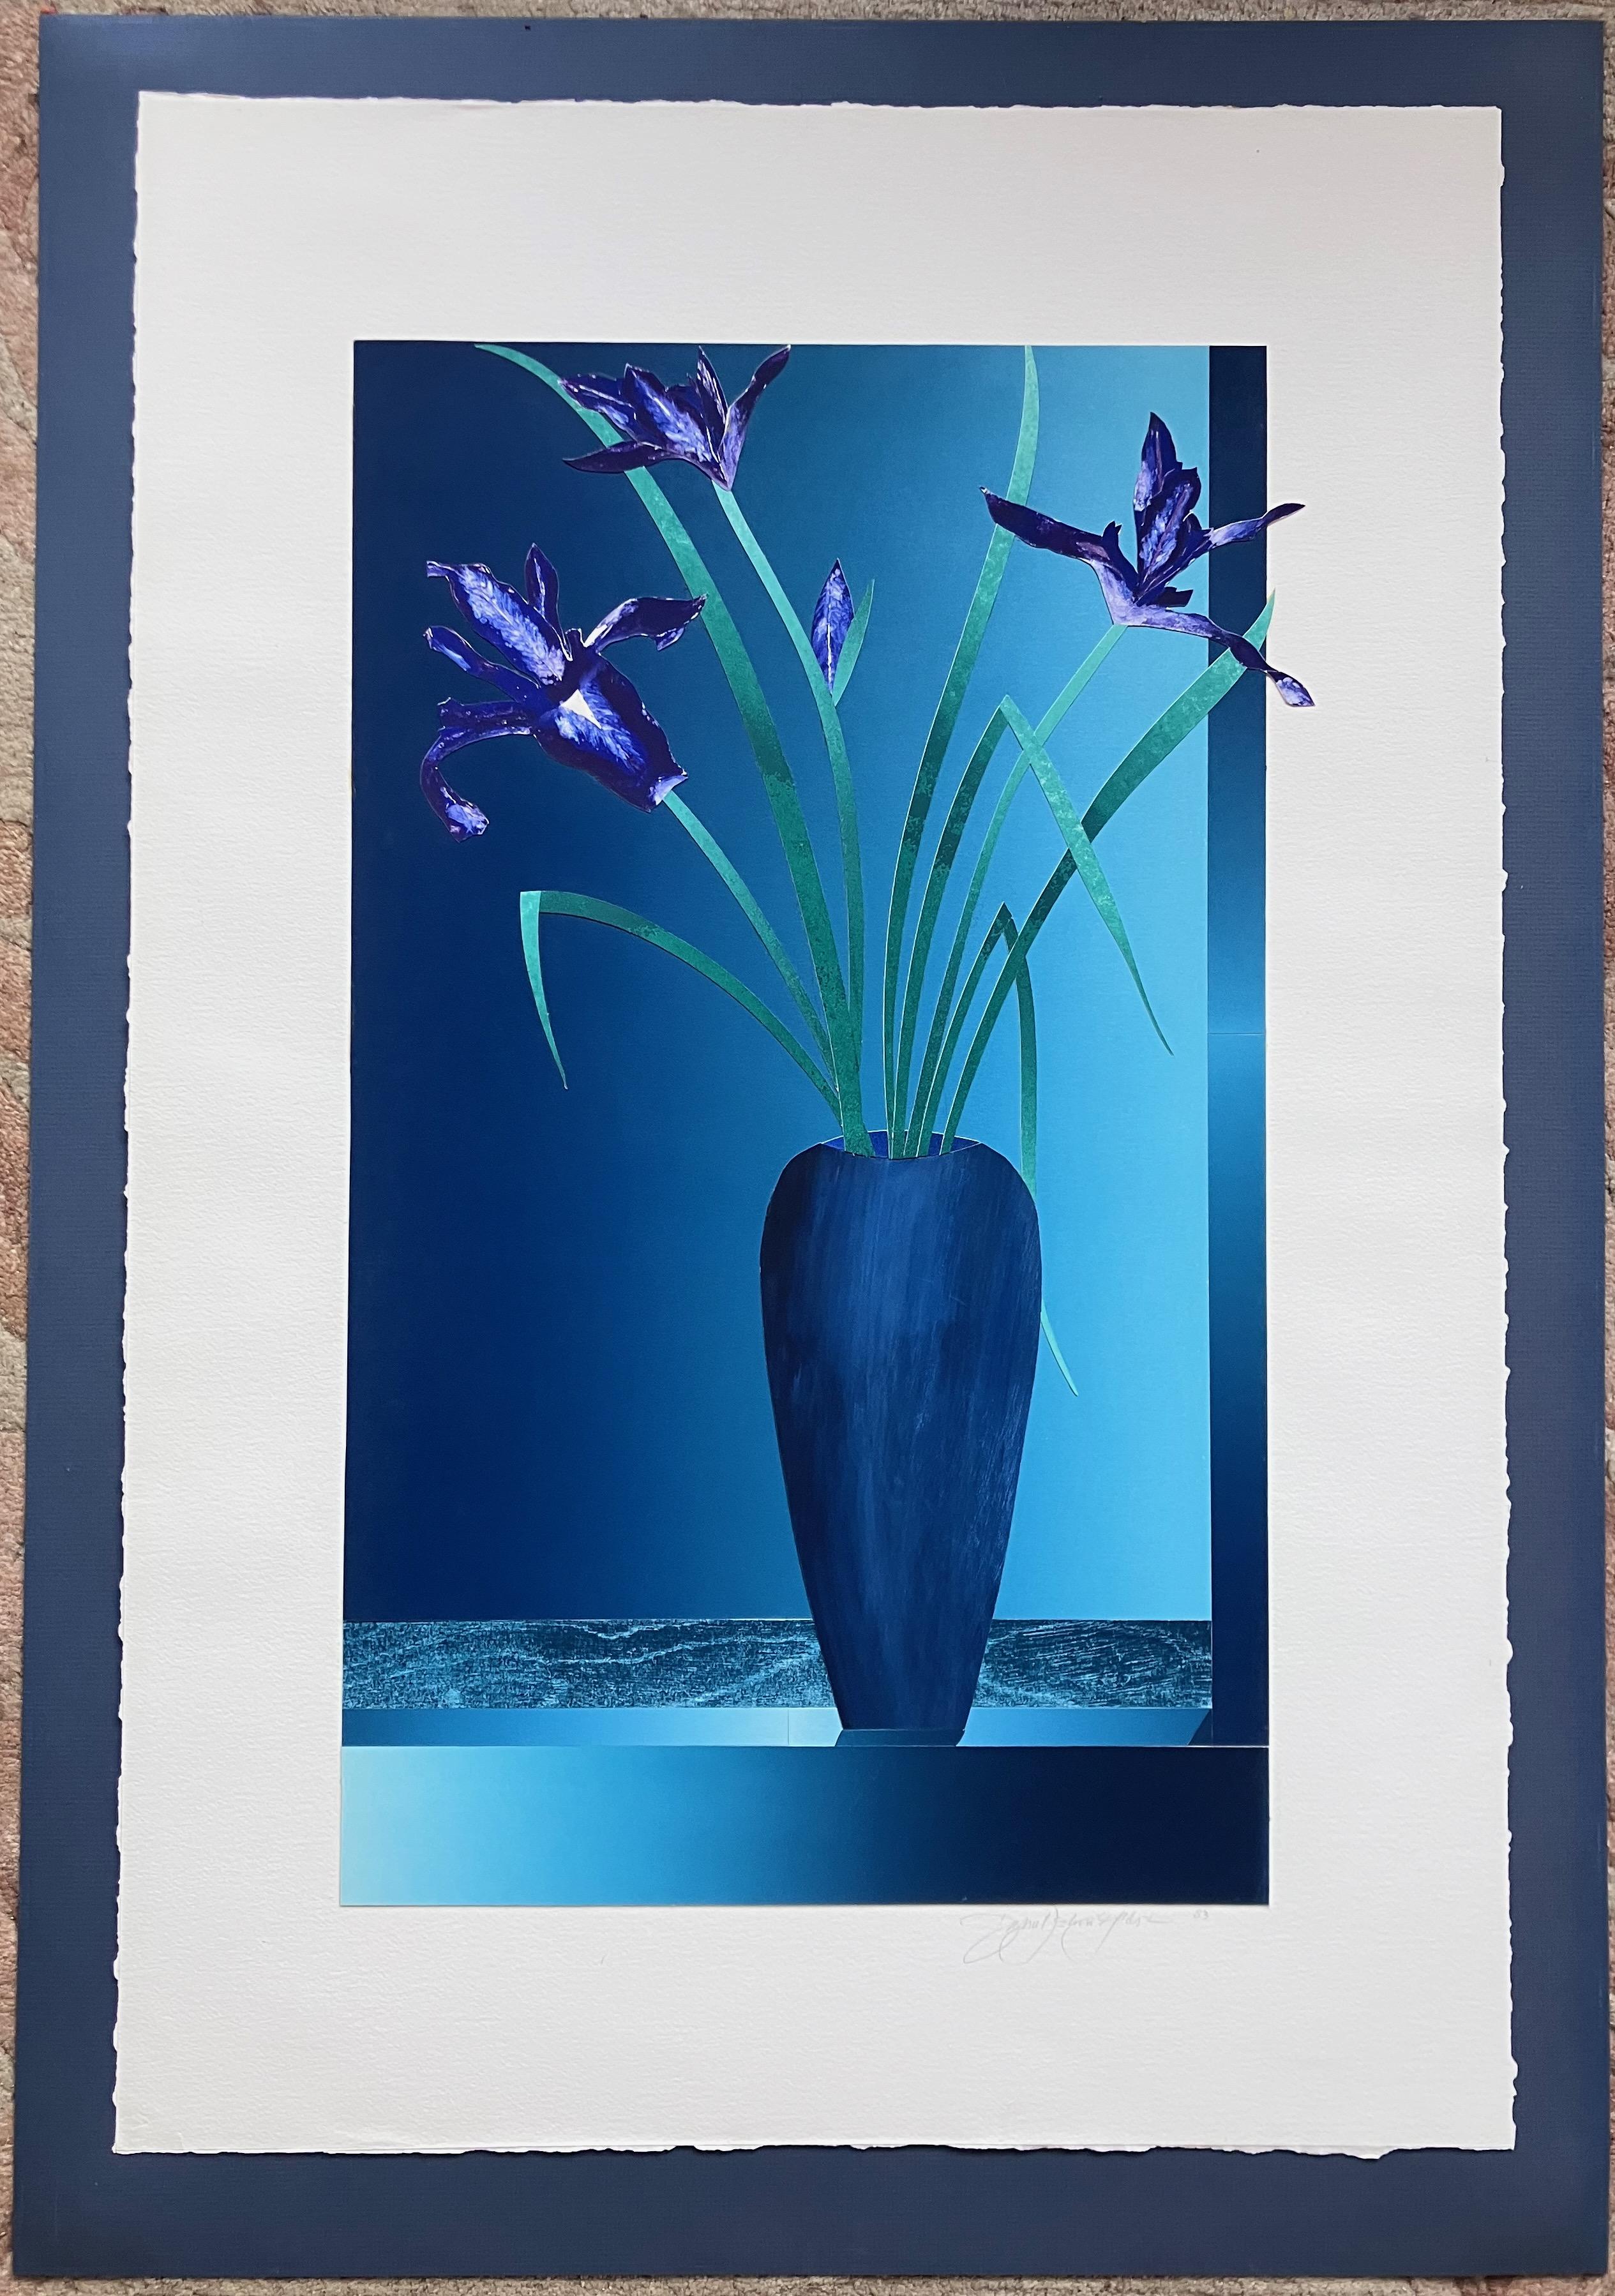 Artistics : Daniel Joshua Goldstein - Américain (1950 -)
Titre : Nature morte - Iris dans un vase 
Année : Circa 1983
Médium : Technique mixte avec collage
Taille de l'image : 27.75 x 17.25 pouces
Taille de la feuille : 36.25 x 24.5 pouces
Encadré